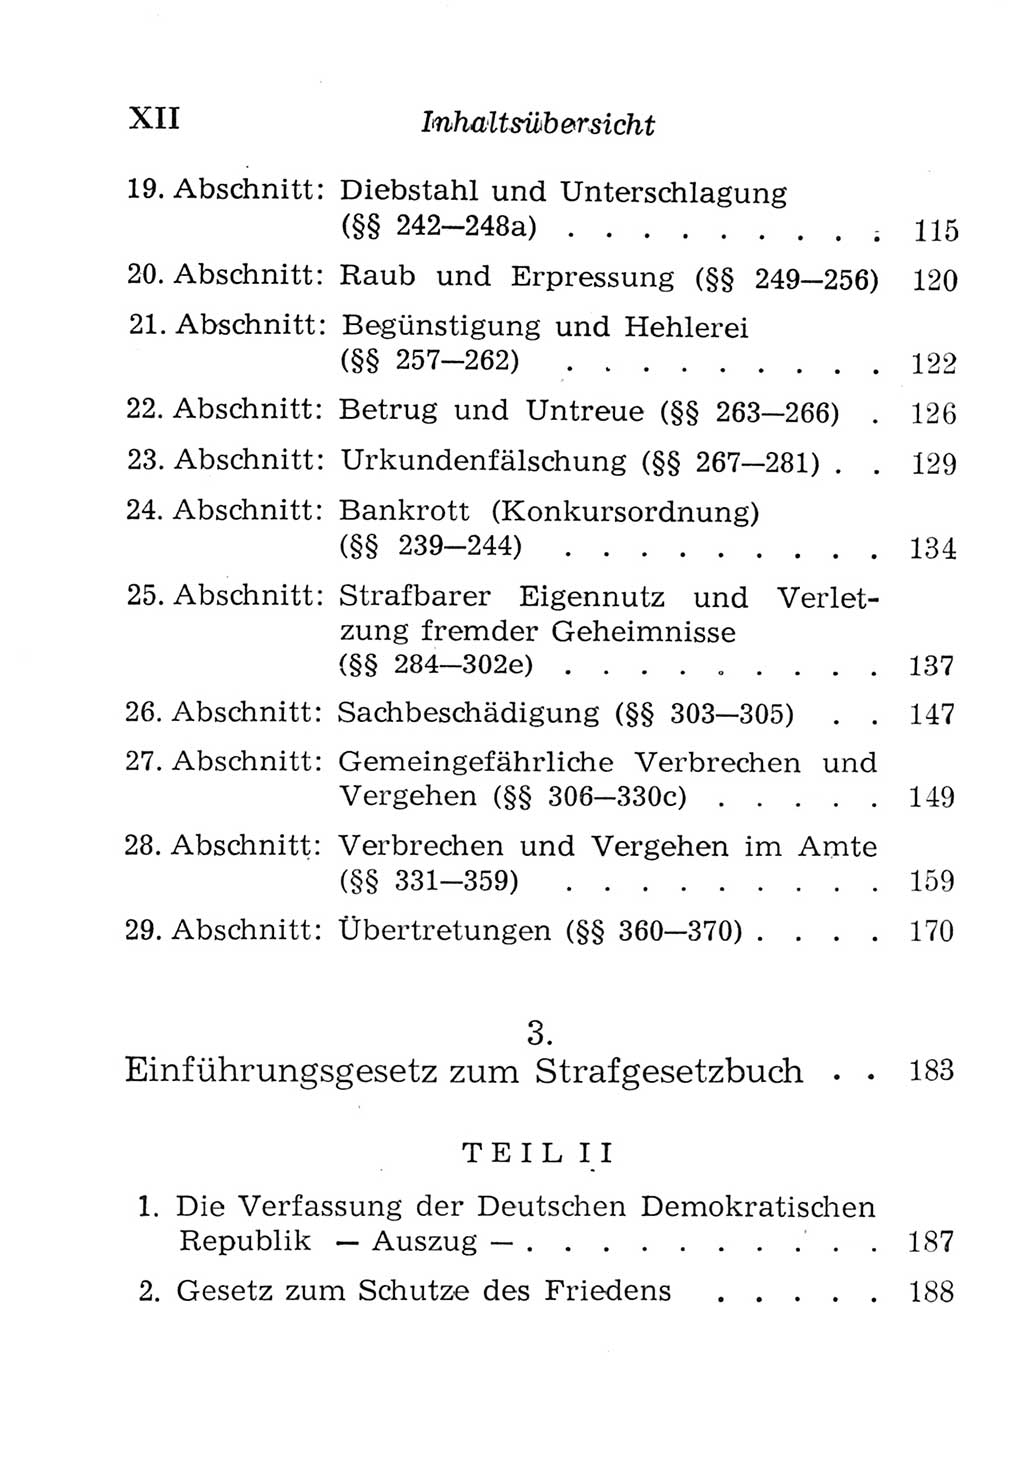 Strafgesetzbuch (StGB) und andere Strafgesetze [Deutsche Demokratische Republik (DDR)] 1957, Seite 12 (Einl. StGB Strafges. DDR 1957, S. 12)